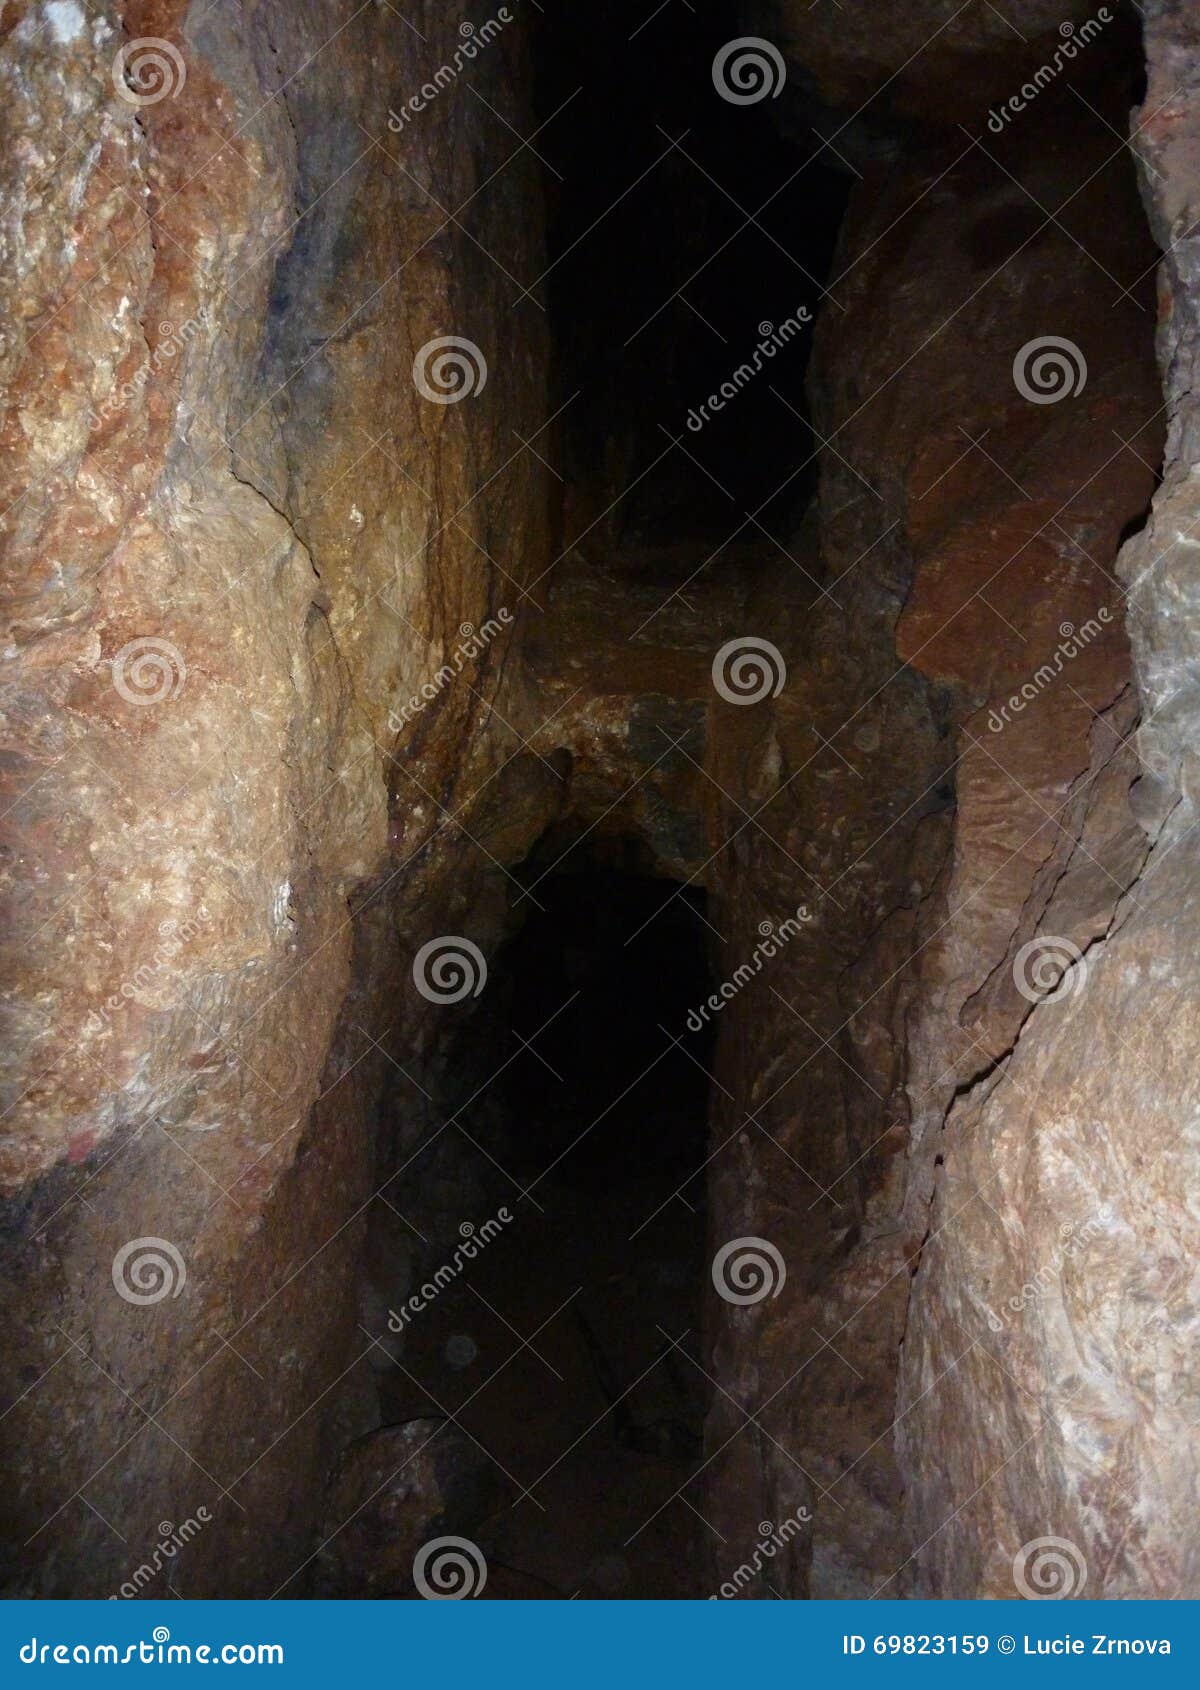 Underground Hole